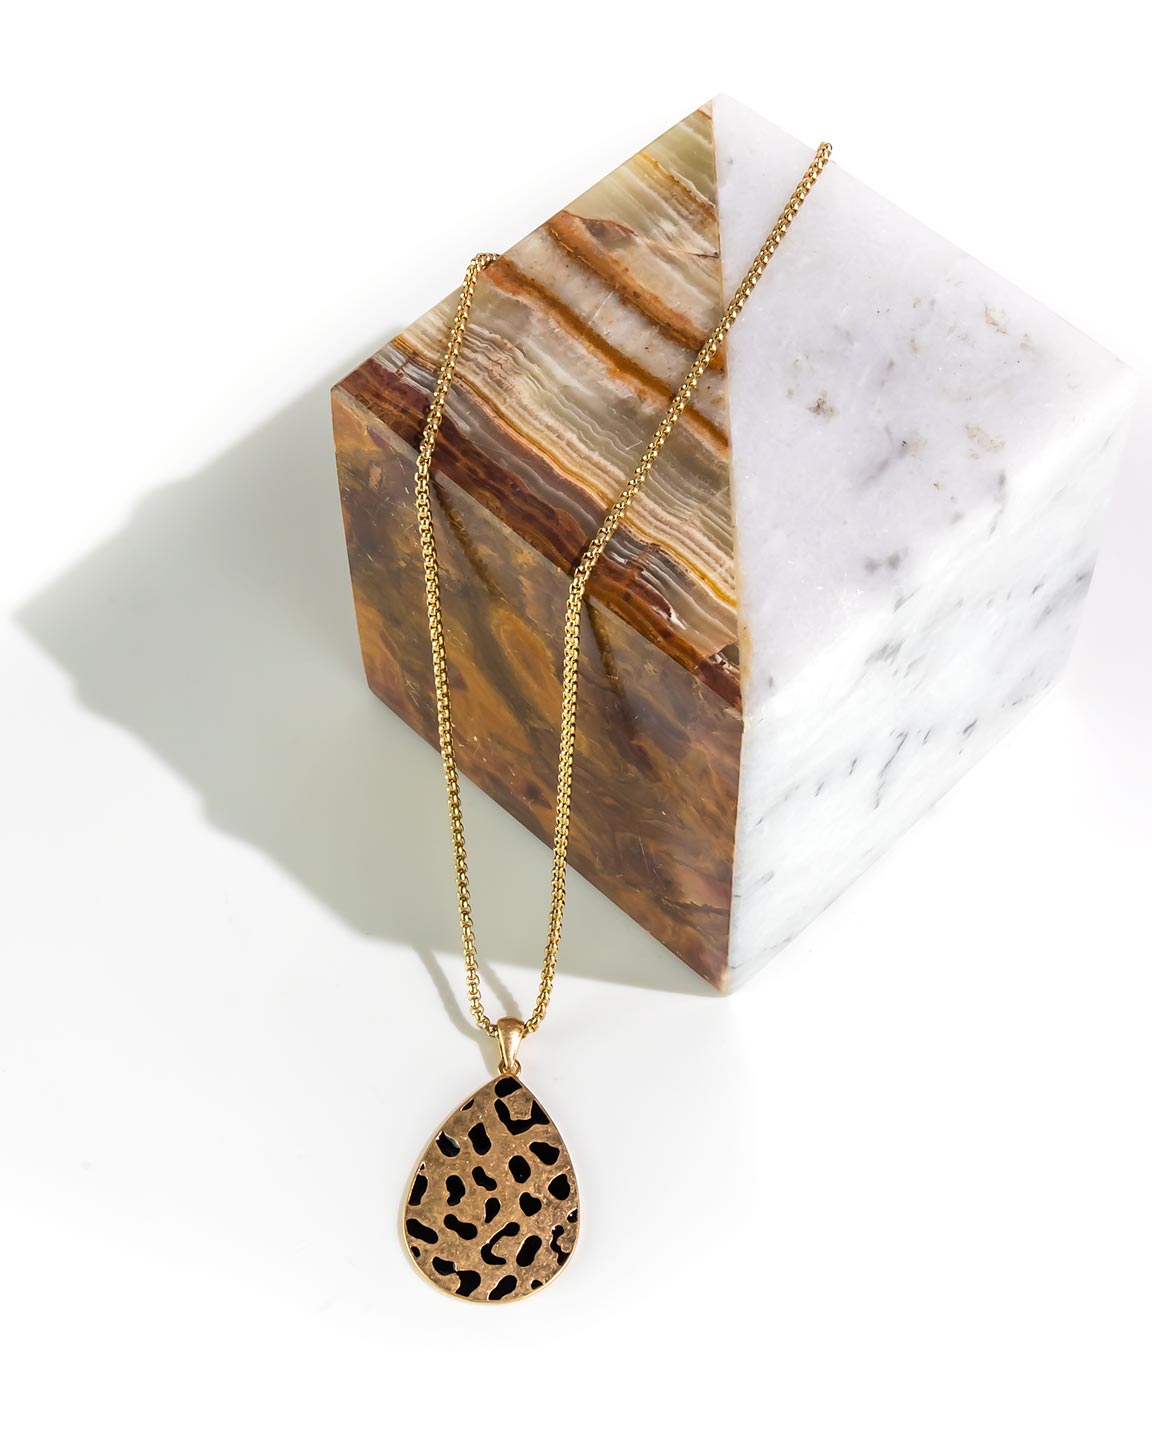 Dauplaise Jewelry - Leopard-Printed Teardrop Pendant Necklace